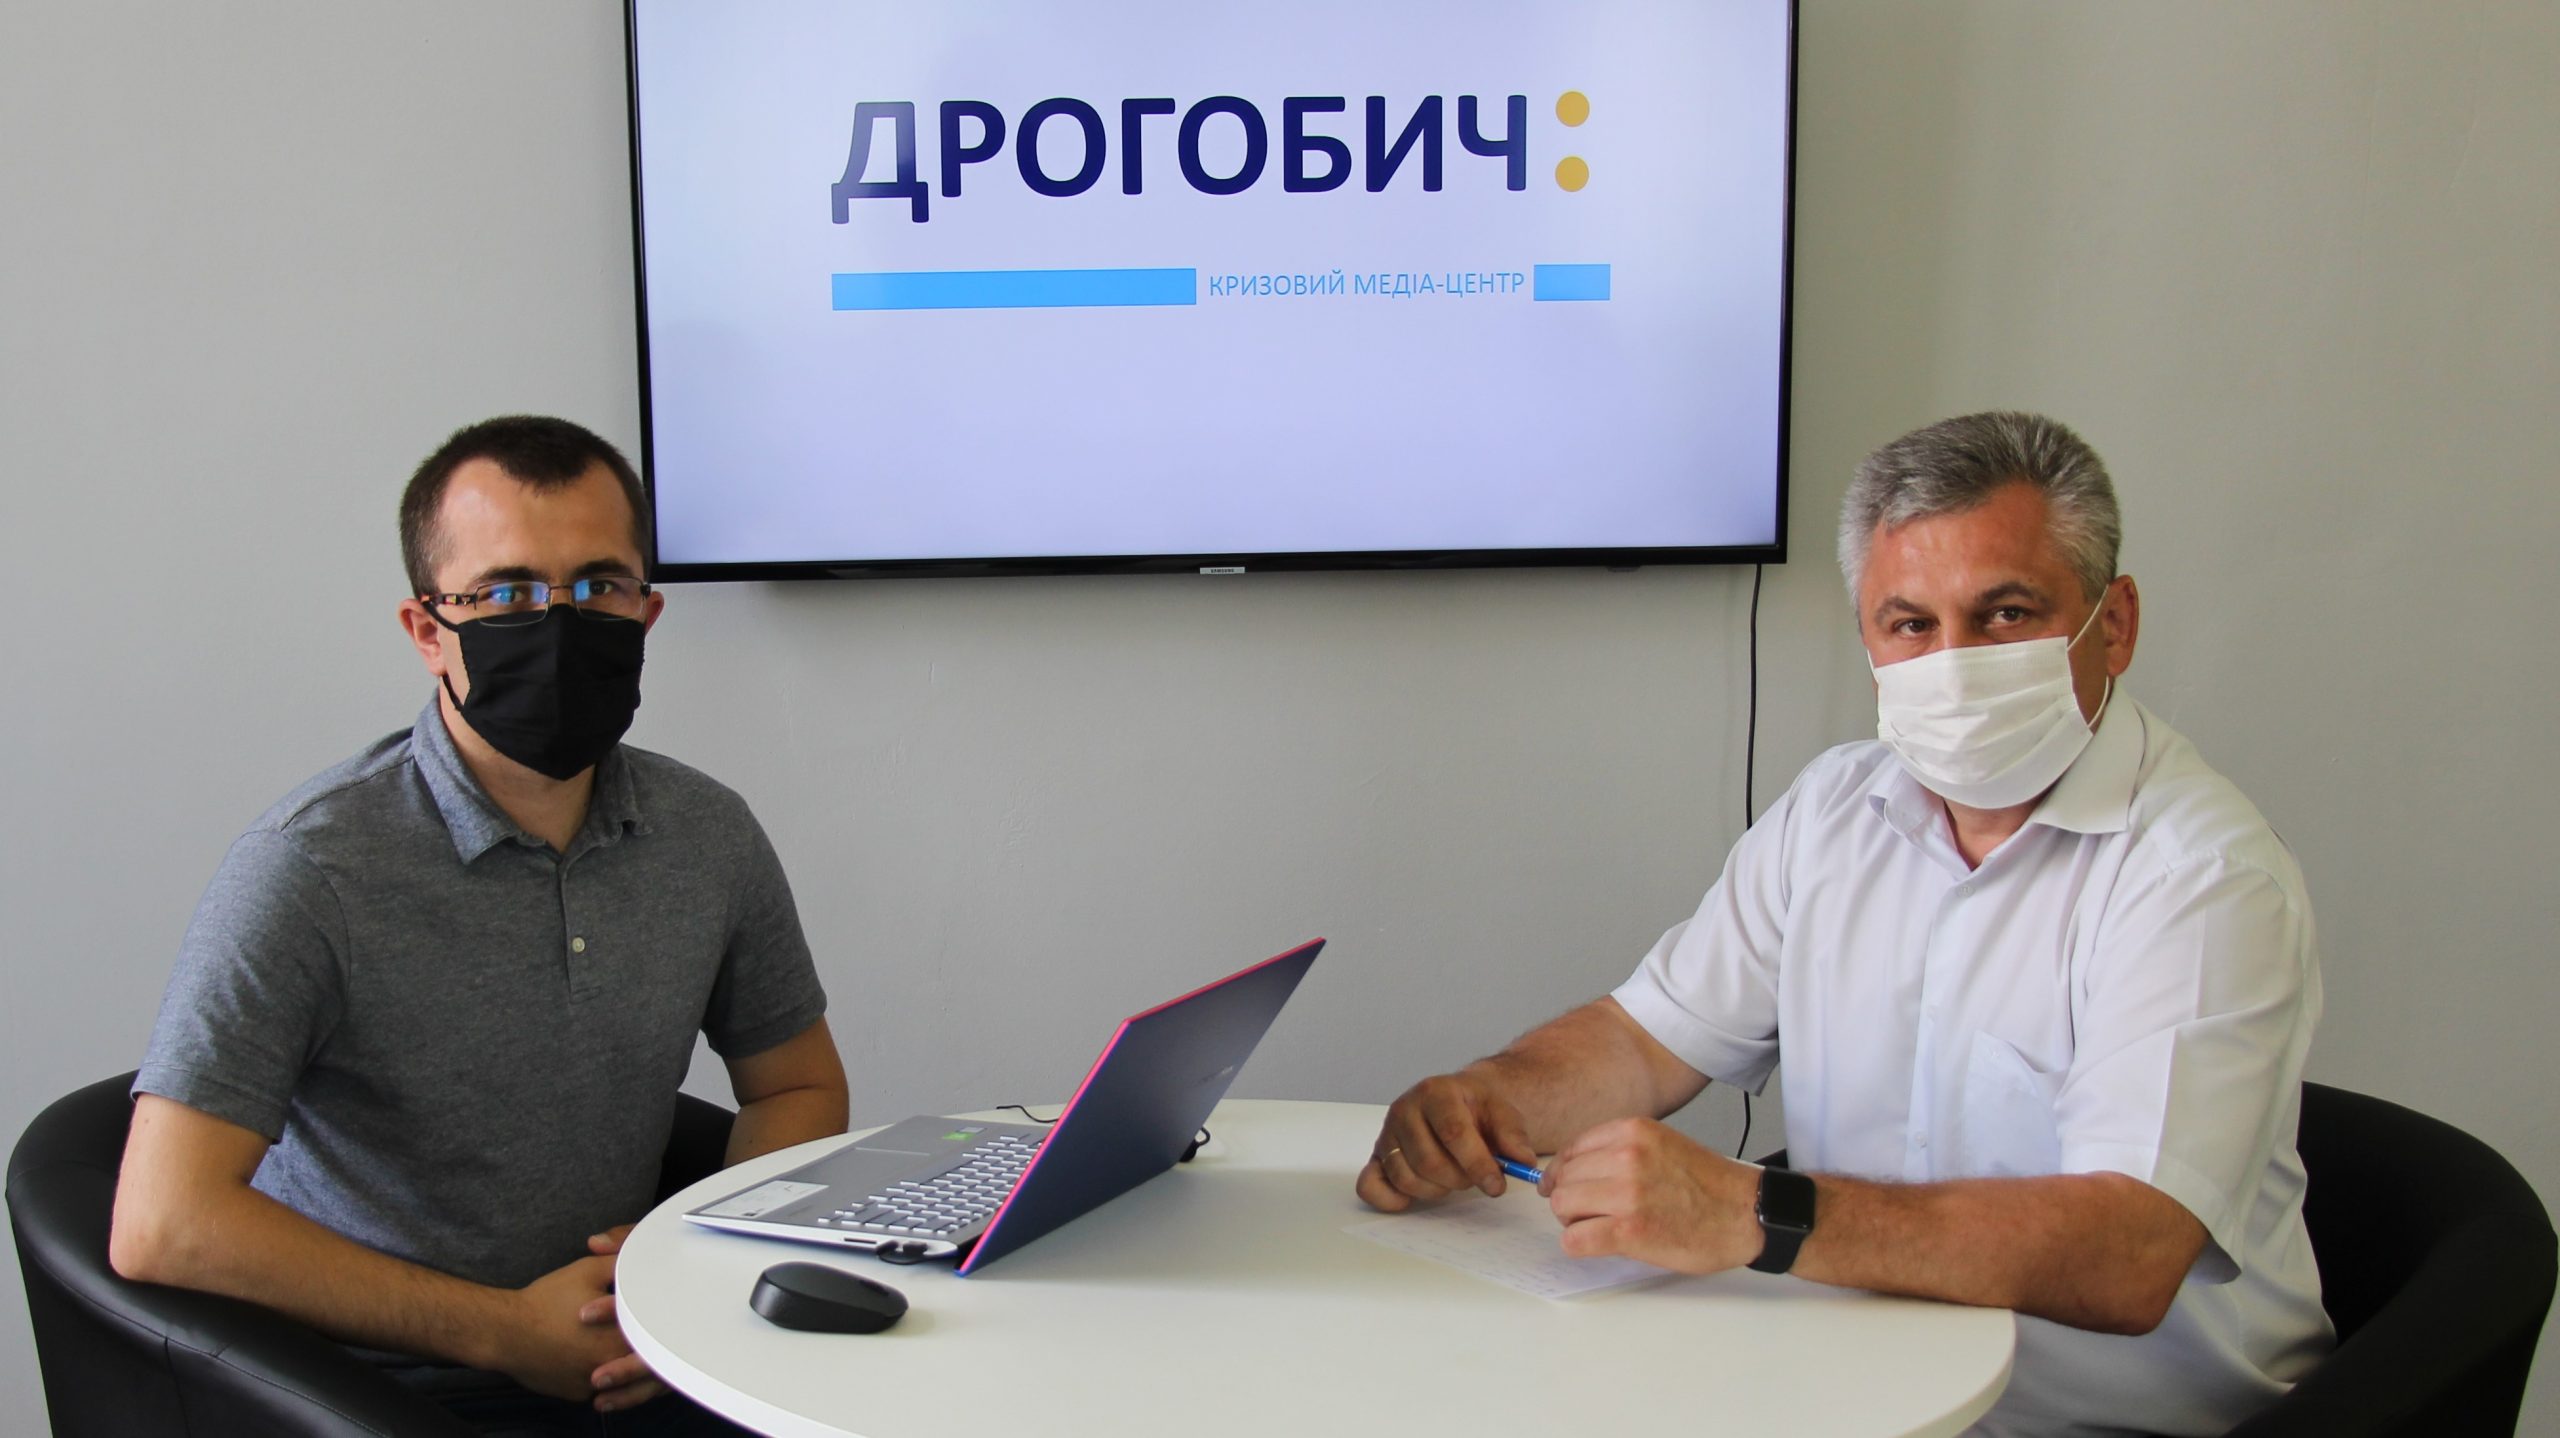 КМЦ «Дрогобич:»: Офіційне повідомлення щодо ситуації із захворюванням на коронавірус